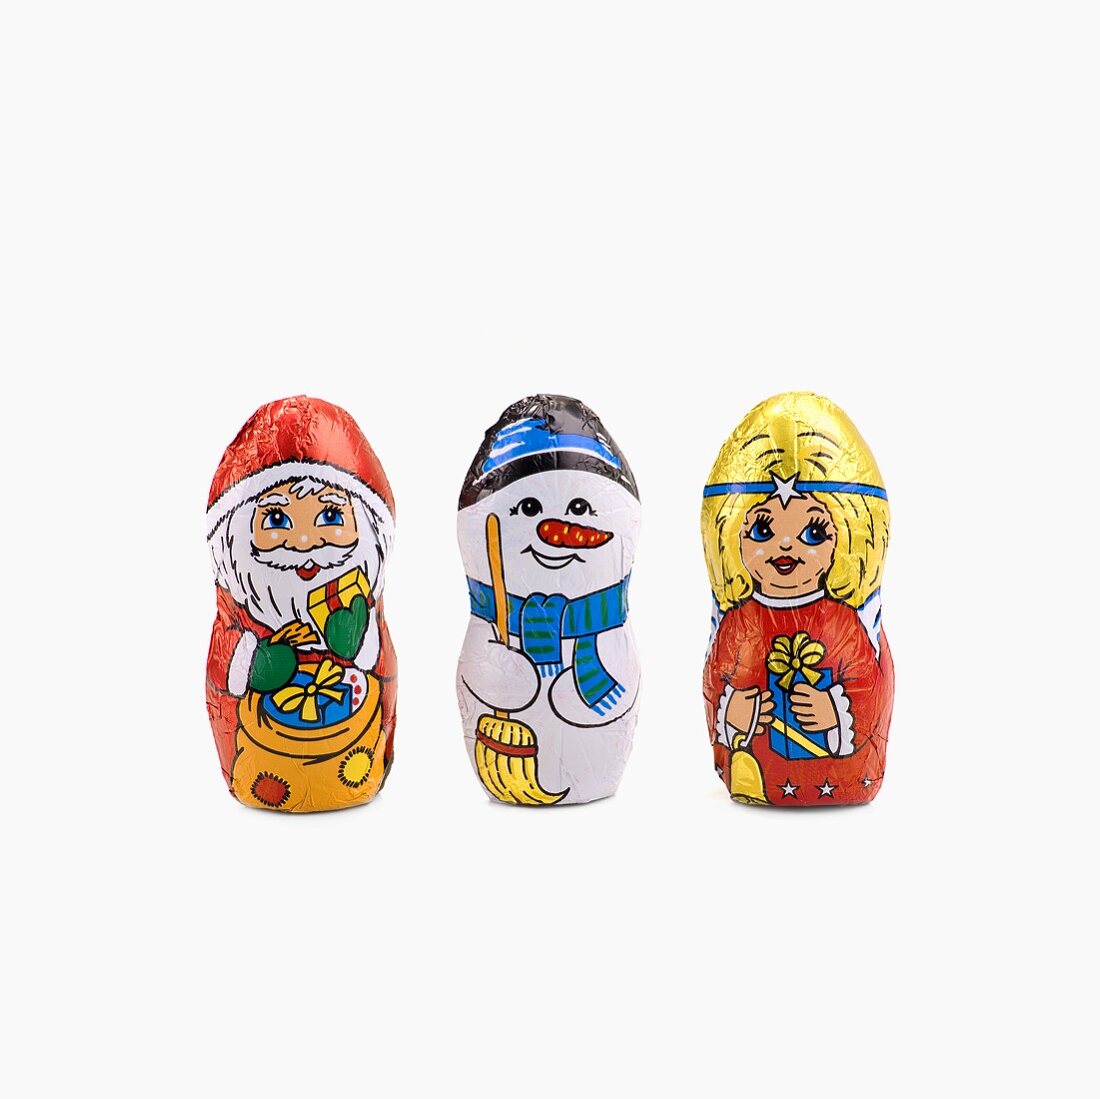 Weihnachtliche Schokoladenfiguren (Nikolaus, Schneemann, Christkind)